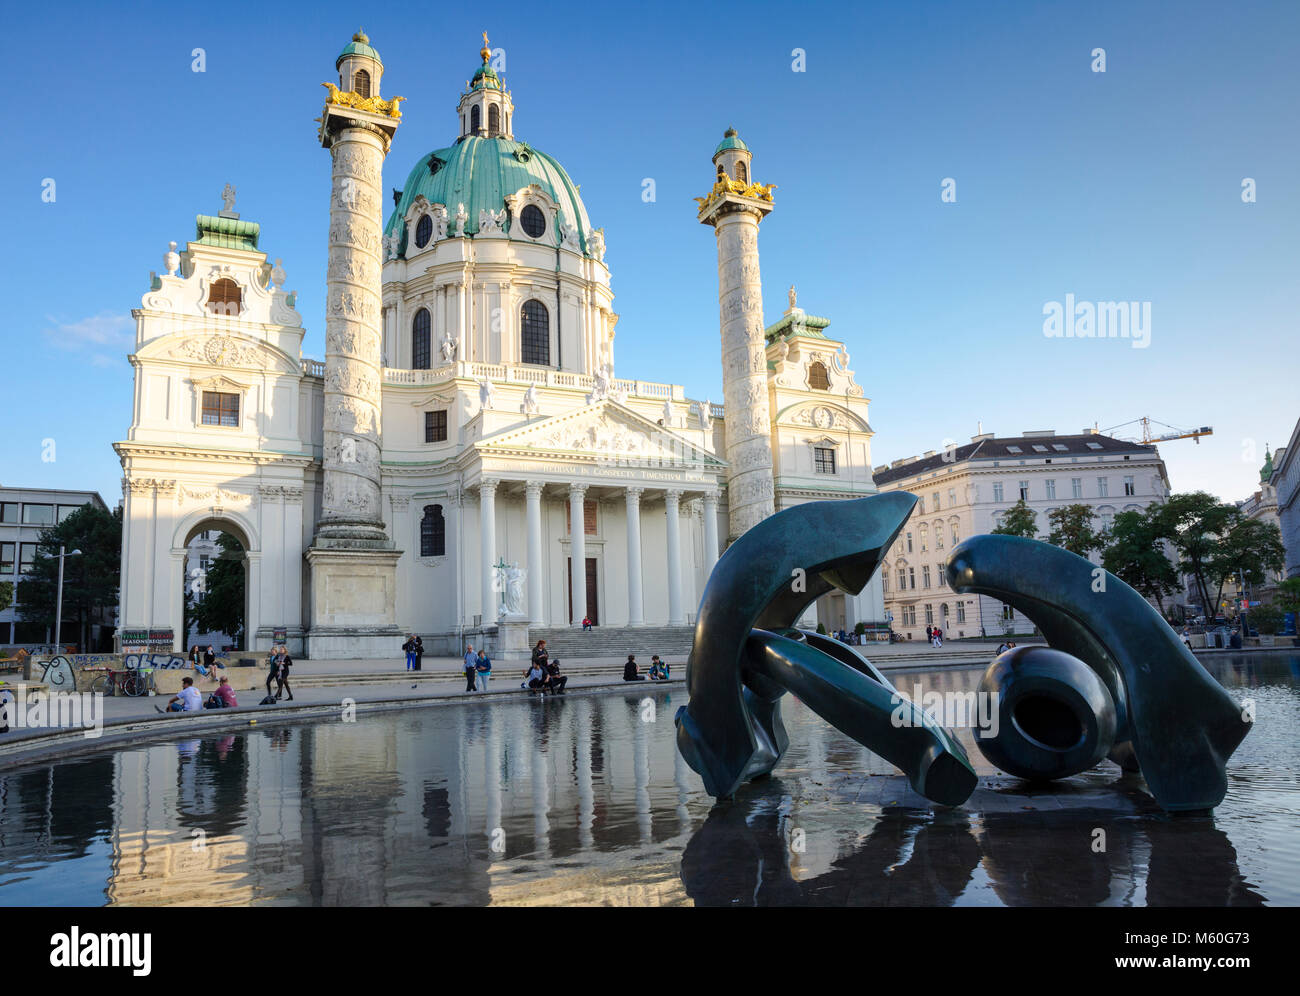 Karlskirche (St. Charles's Church) with Henry Moore sculpture, Karlsplatz, Vienna, Austria. Stock Photo